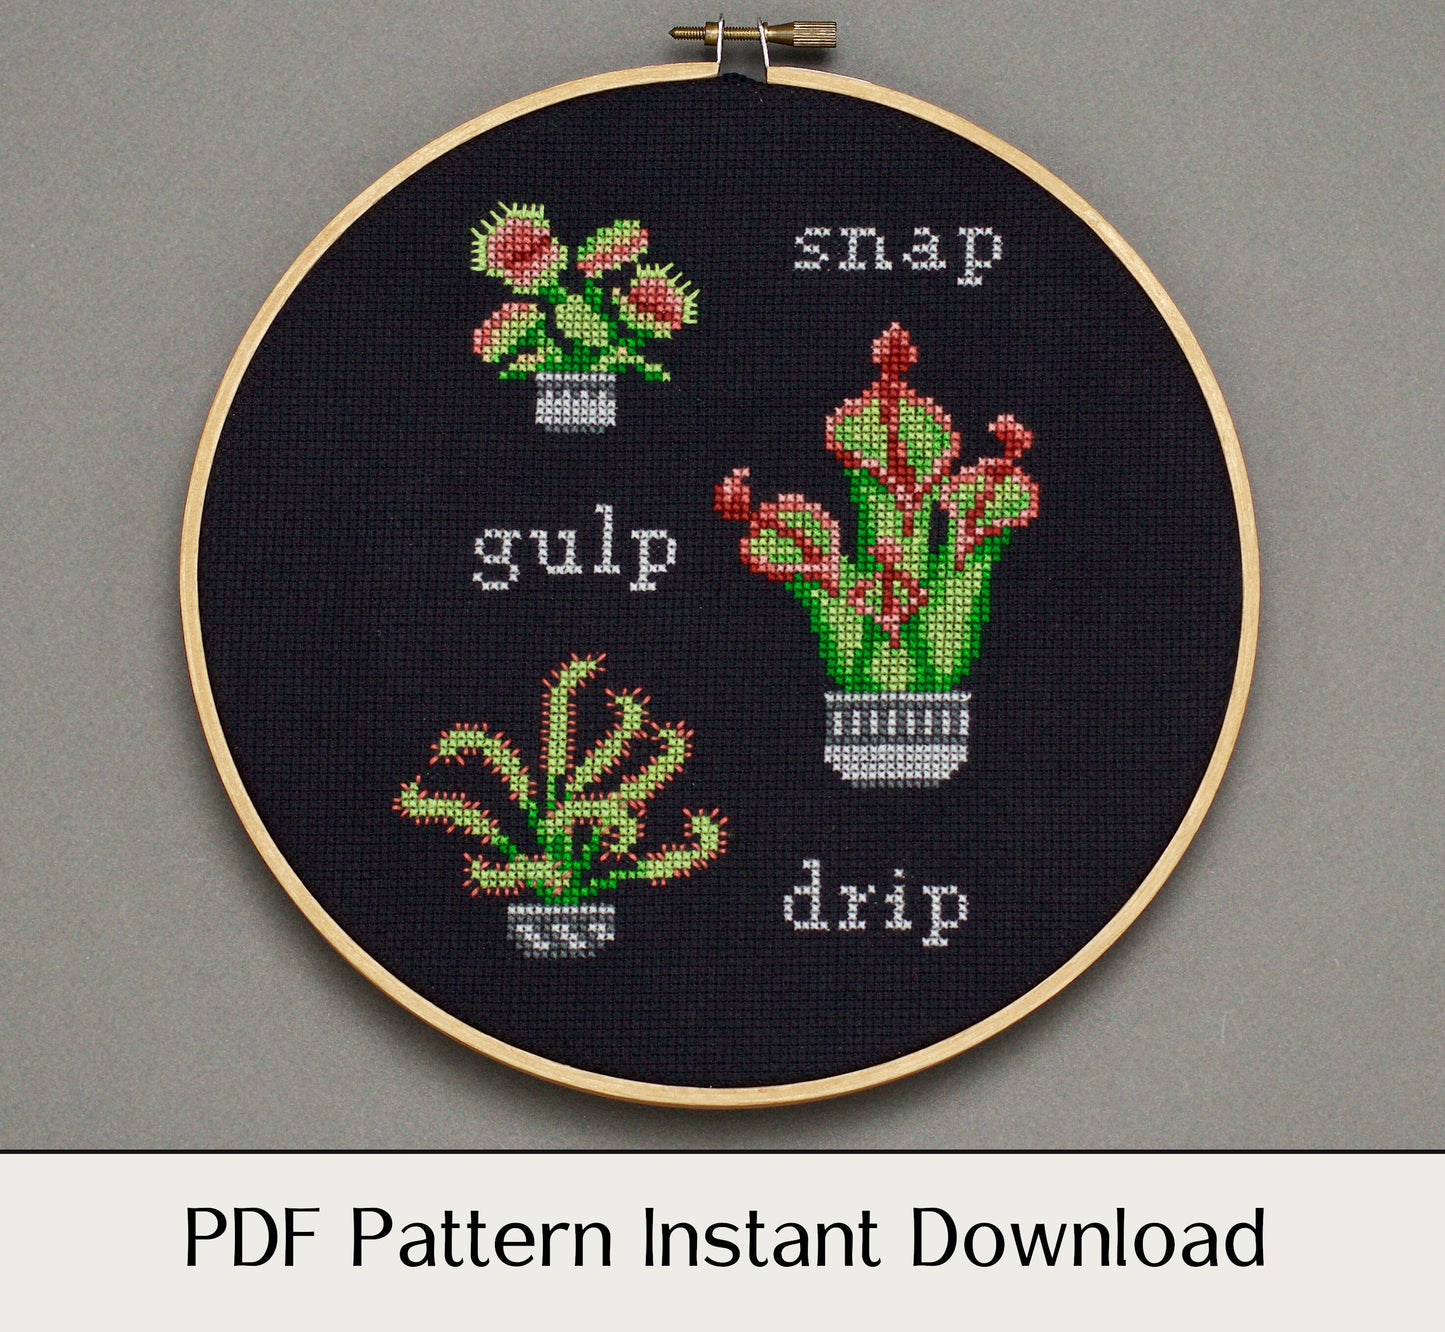 Snap, Gulp, Drip - Digital PDF Cross Stitch Pattern